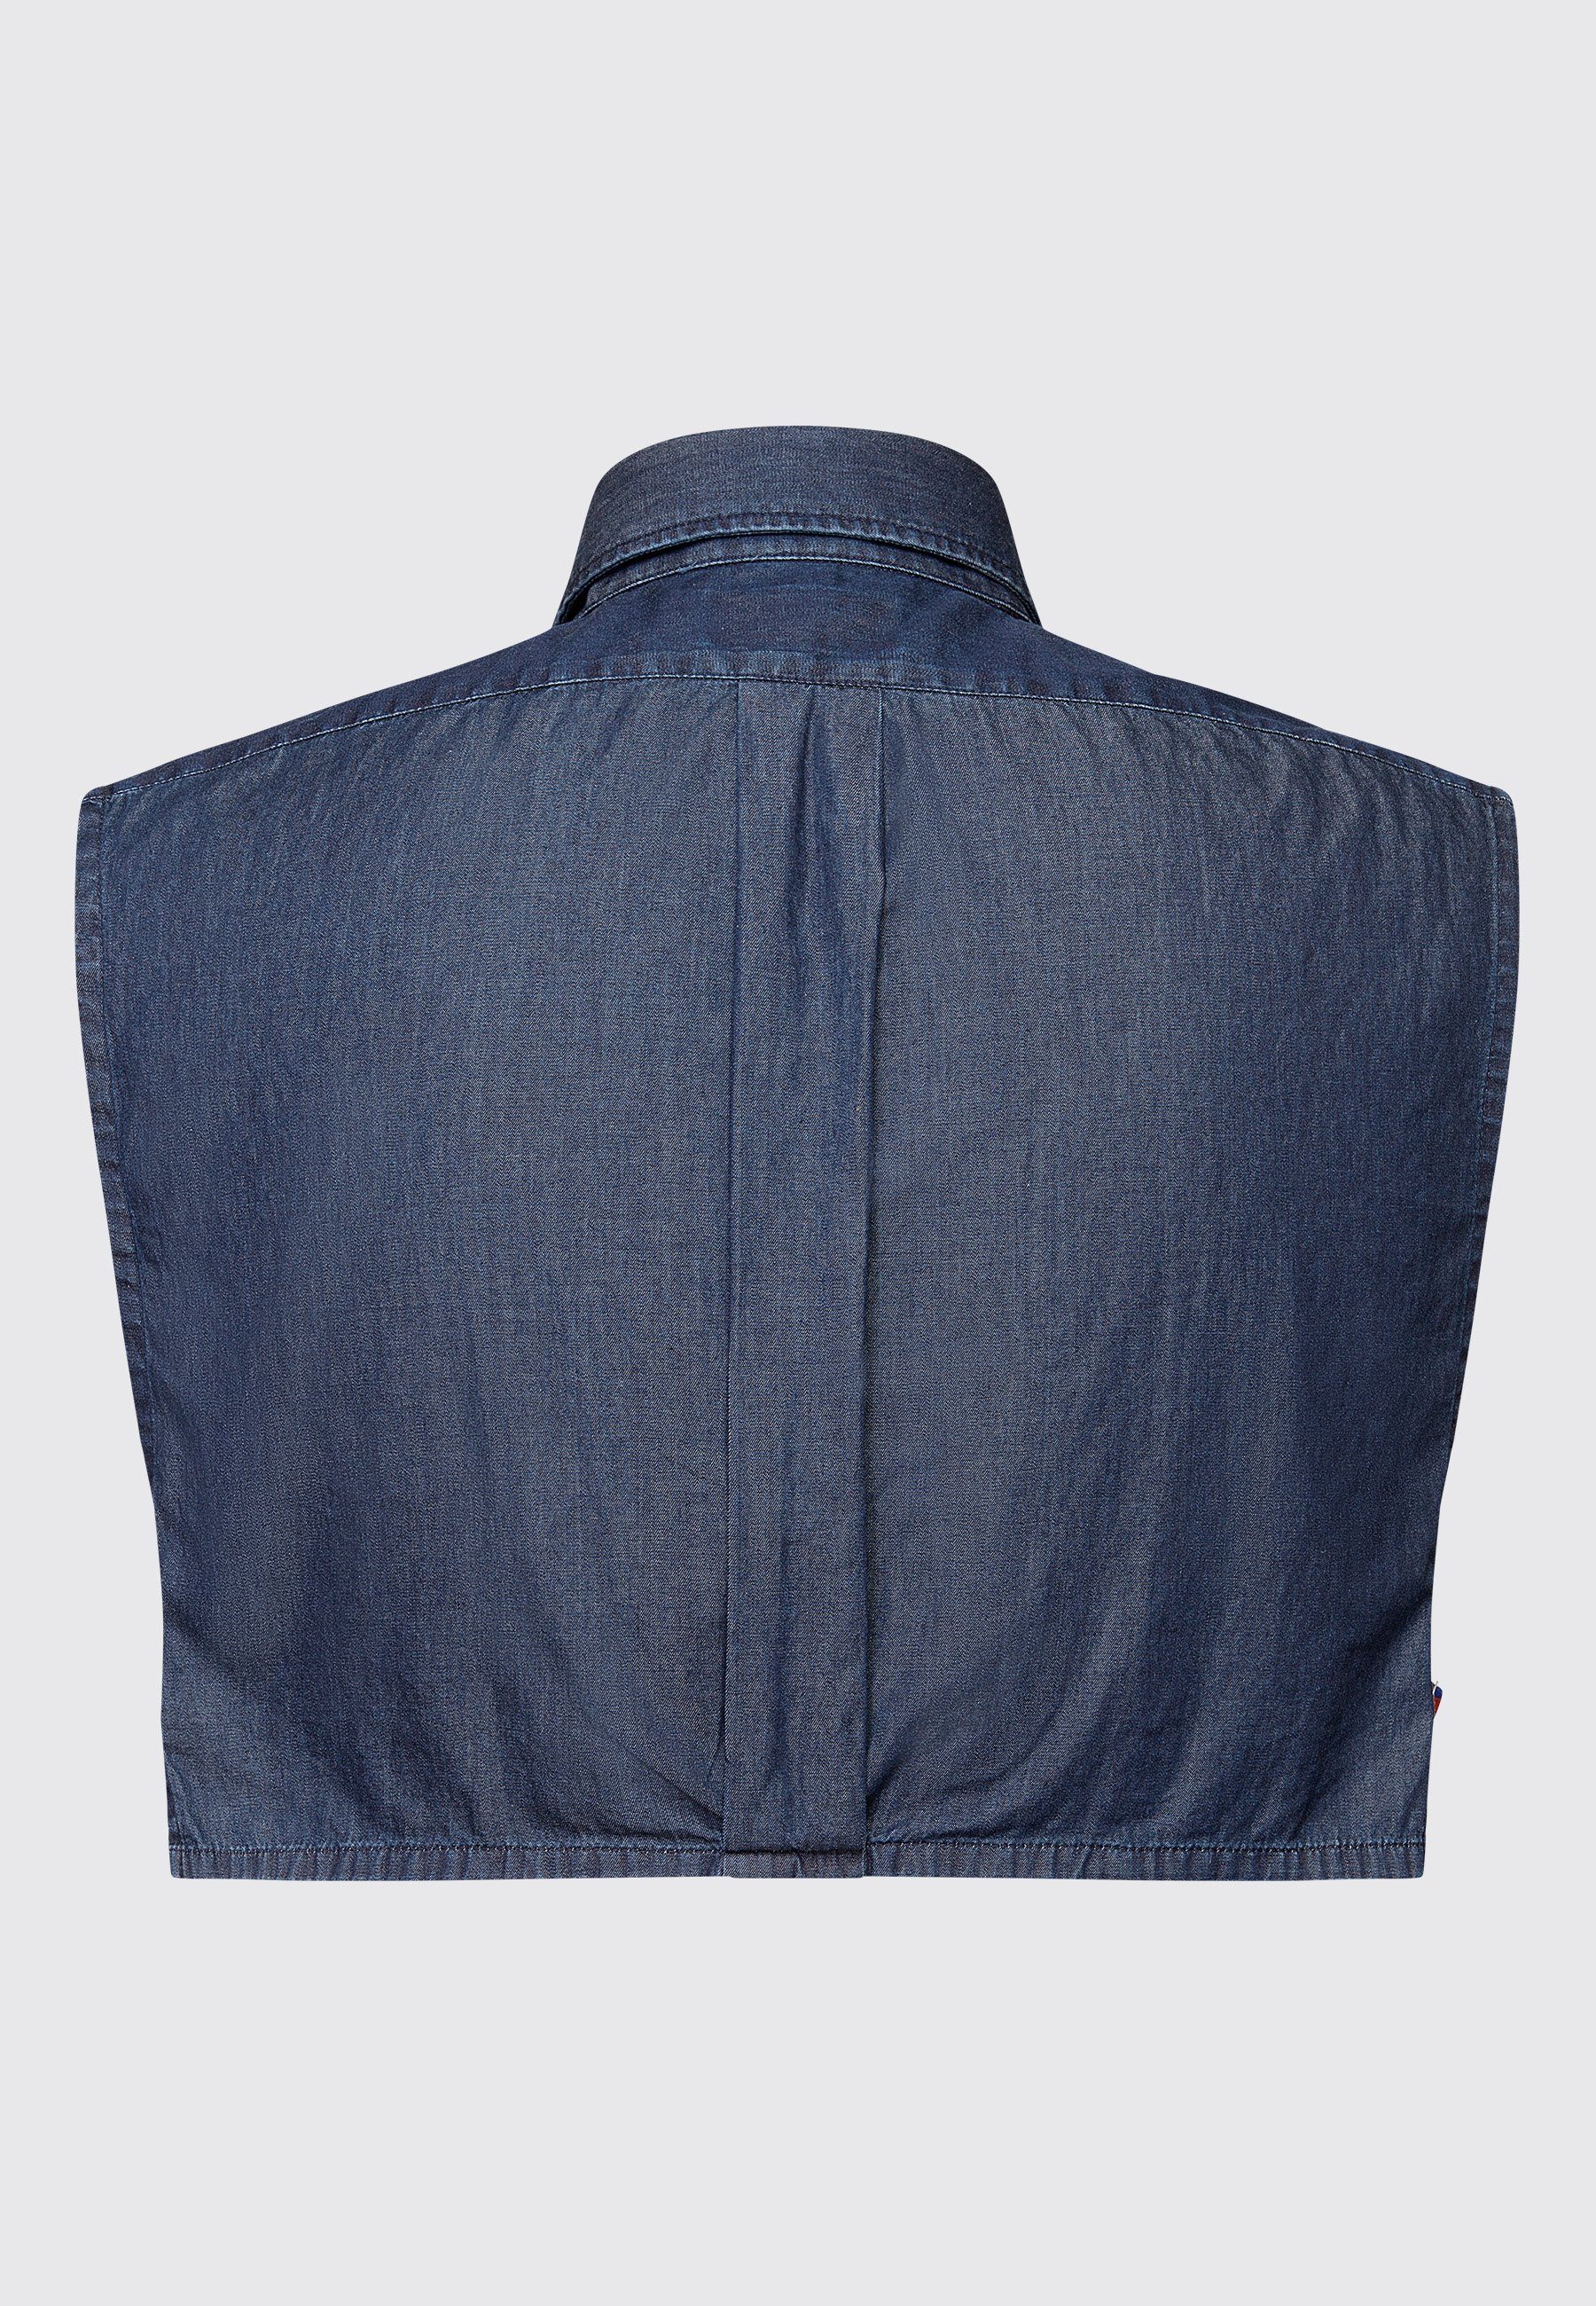 Kragen Eleganter Kragnart Hergestellt Jeans - Fake für in Modischer Button-Down-Kragen, Männer, Krageneinsatz, Hemdkragen Einsteckkragen blau Europa -